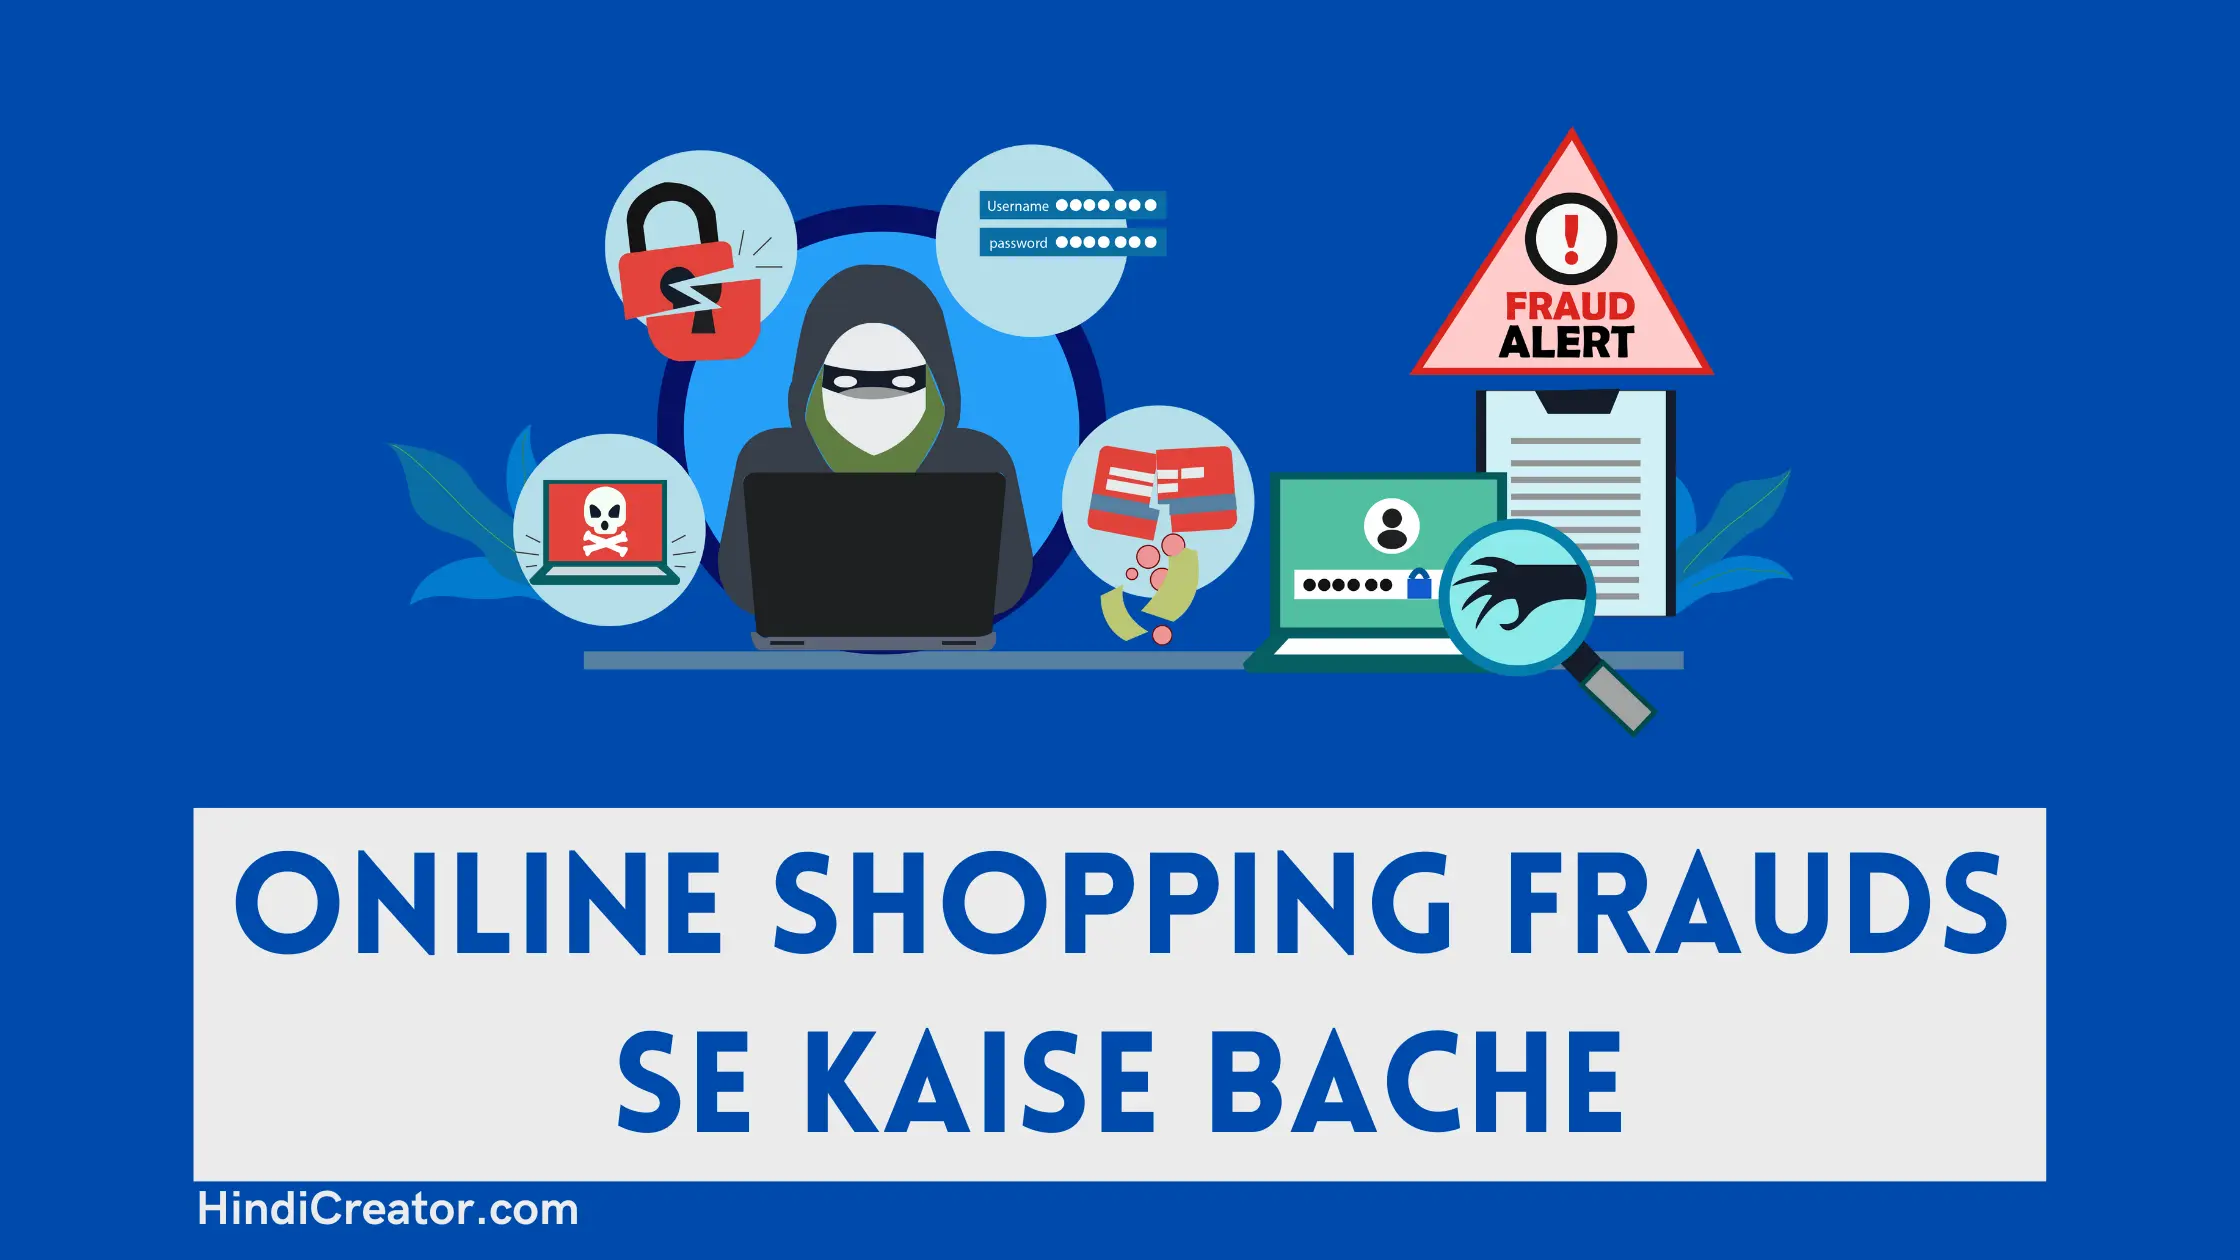 Online Shopping Frauds Se Kaise Bache